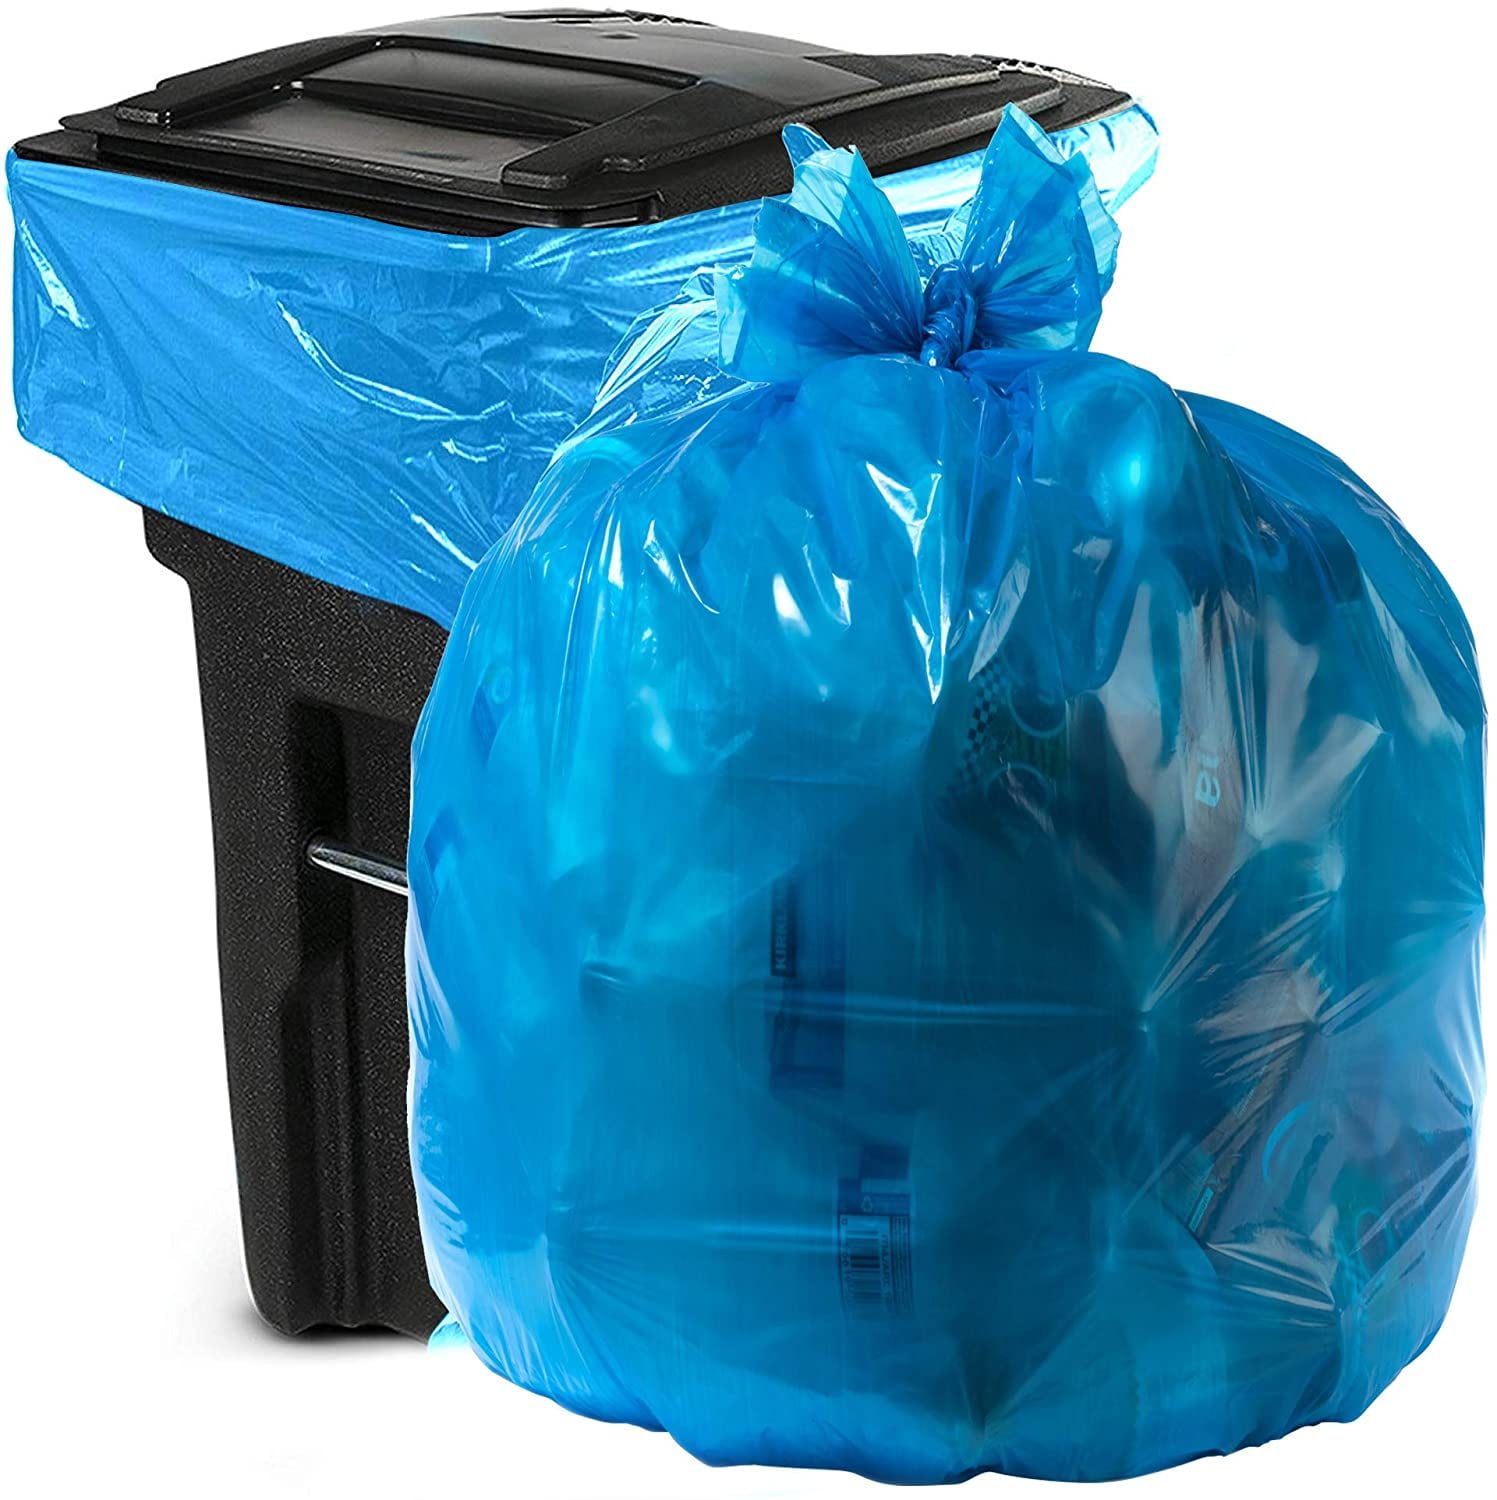 Blue Garbage Bags | lupon.gov.ph